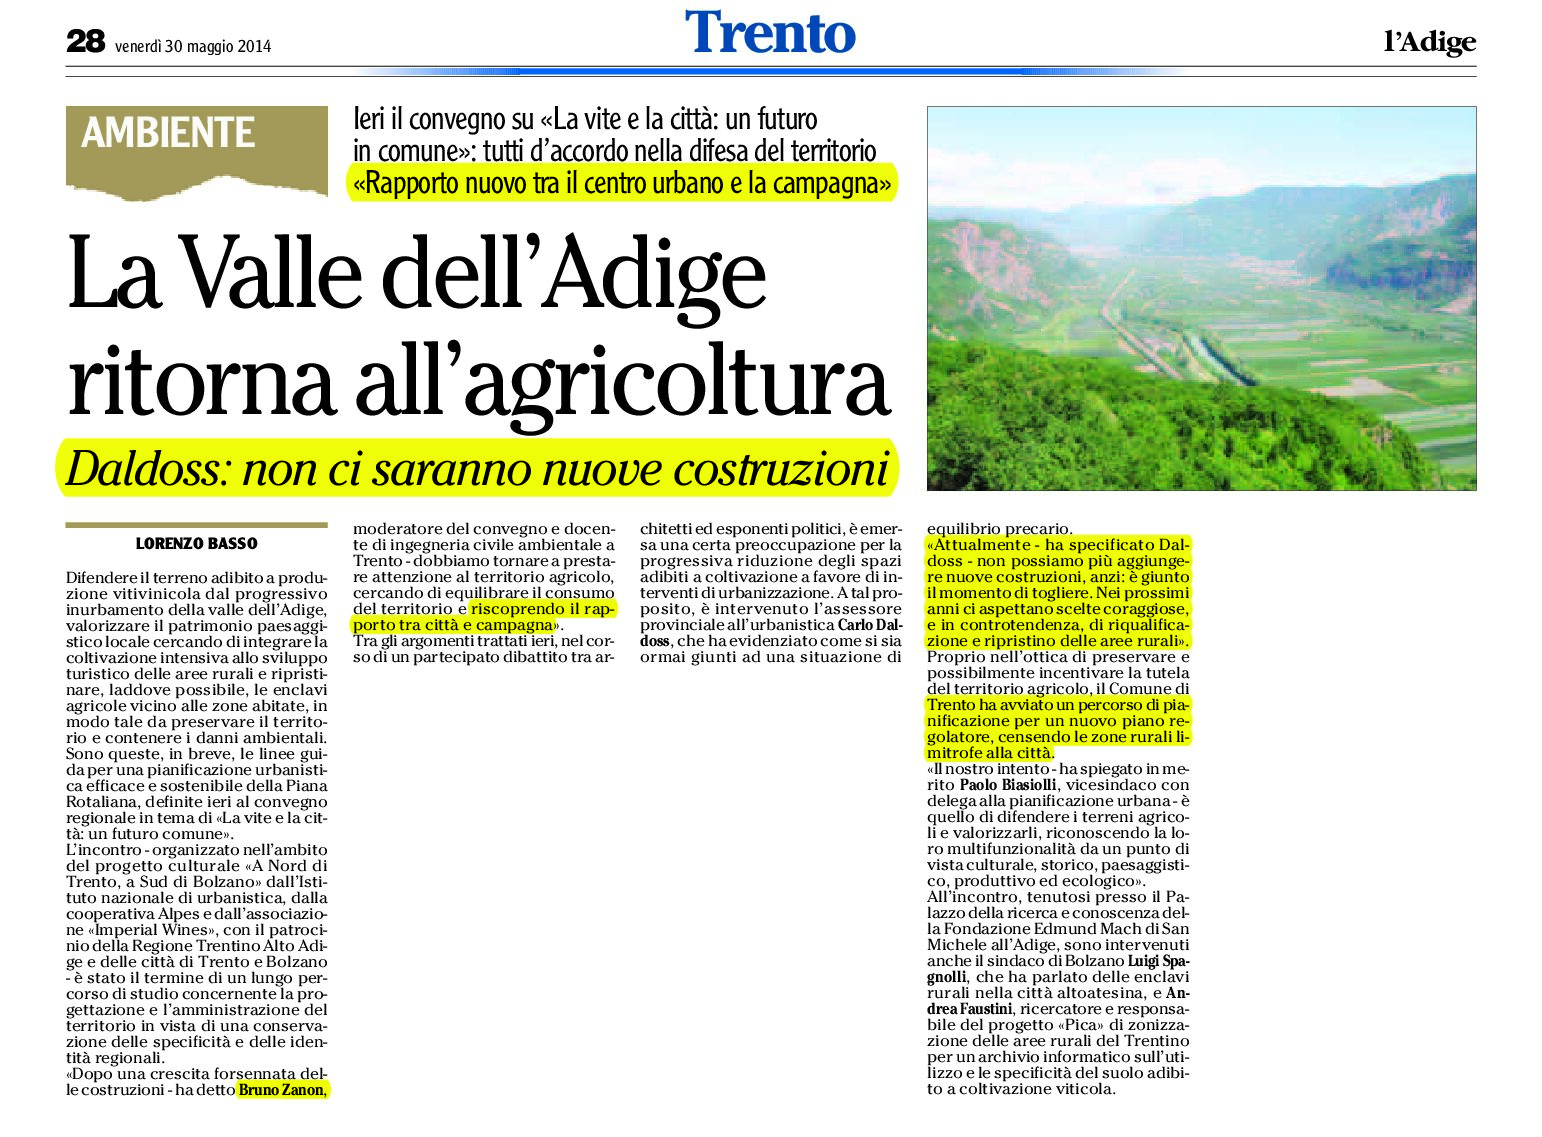 Trento: la Valle dell’Adige ritorna all’agricoltura